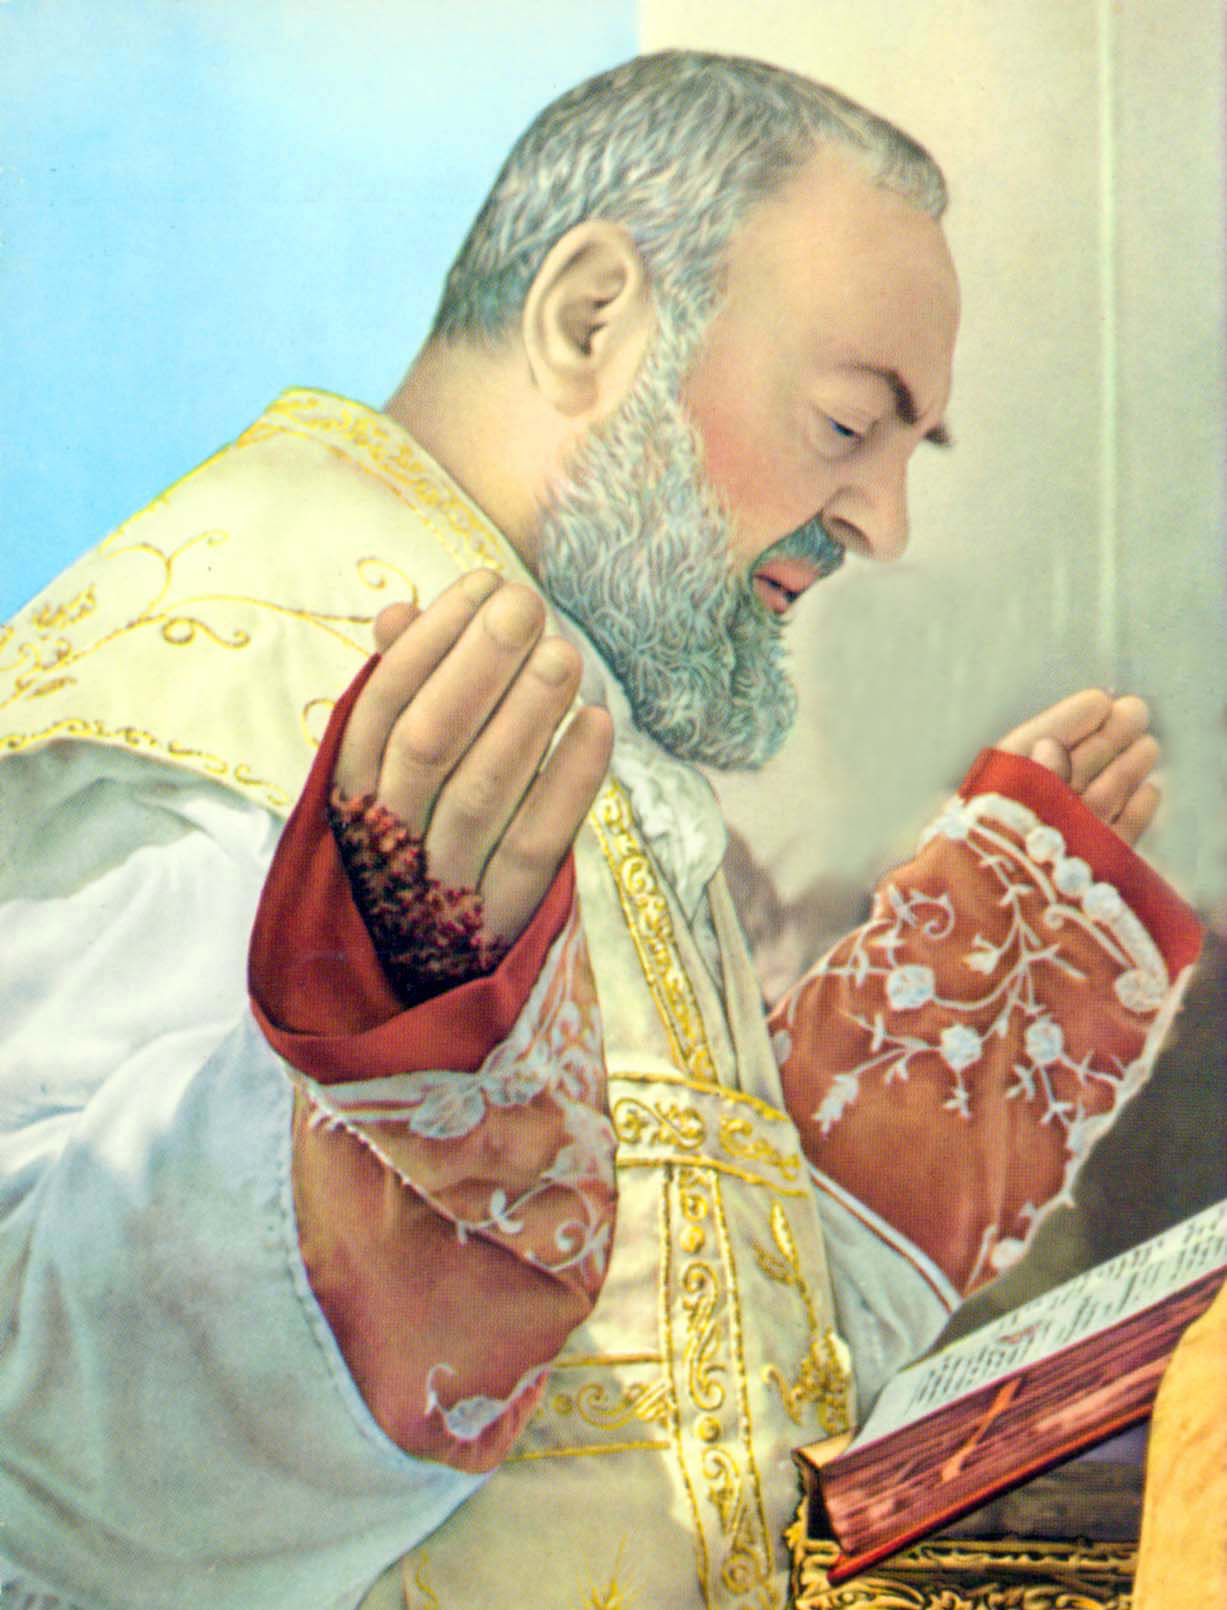  <a href="https://www.palmarianchurch.org/saint-pio-of-pietrelcina/" title="Saint Pío of Pietrelcina">Saint Pío of Pietrelcina<br><br>See more</a>